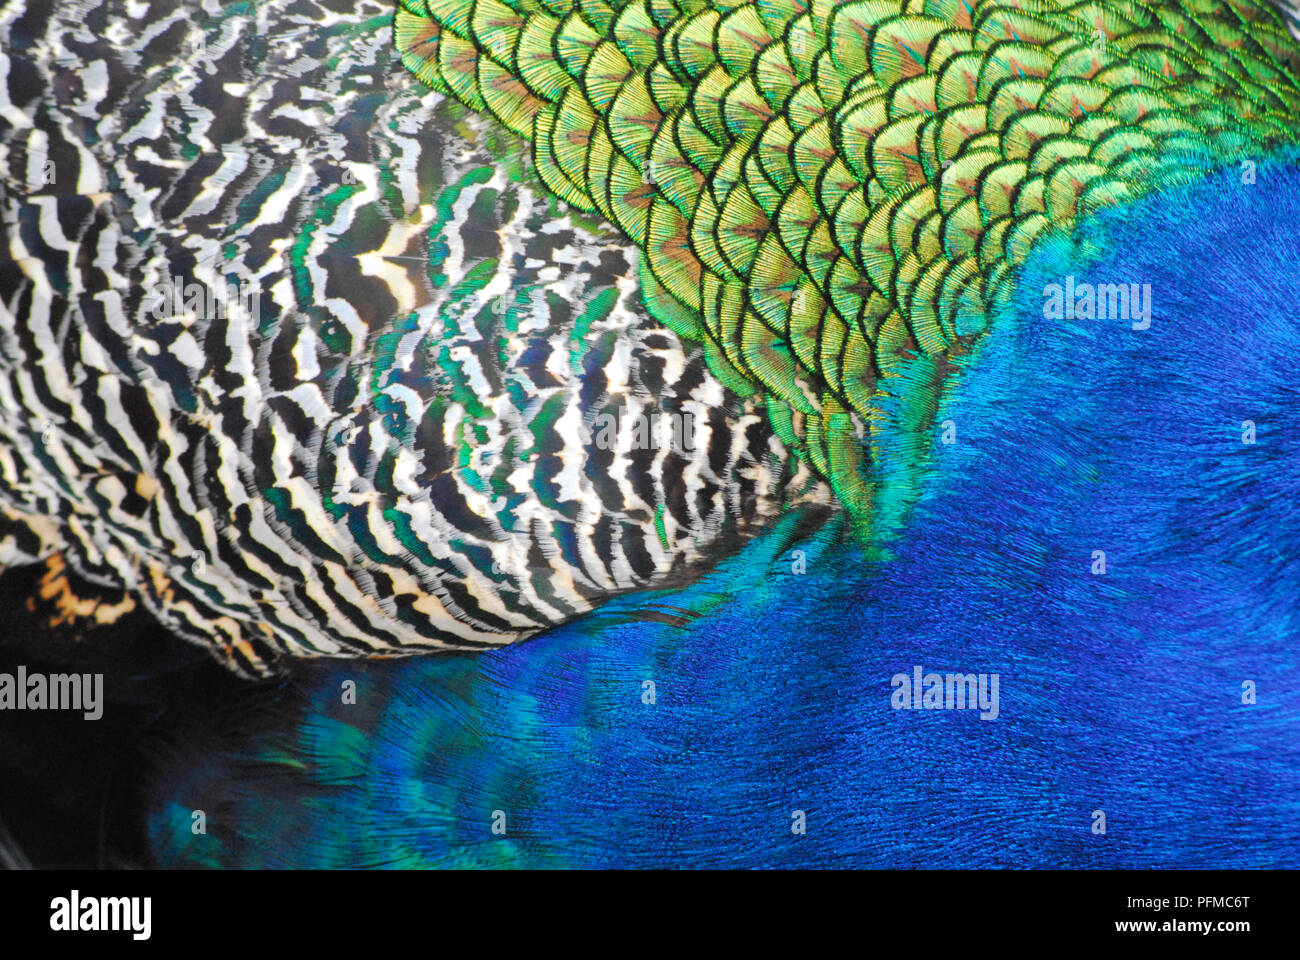 Un incredibile abstract close up del contrasto colori iridescenti e modelli delle belle piume sul retro di un maschio di pavone. Foto Stock